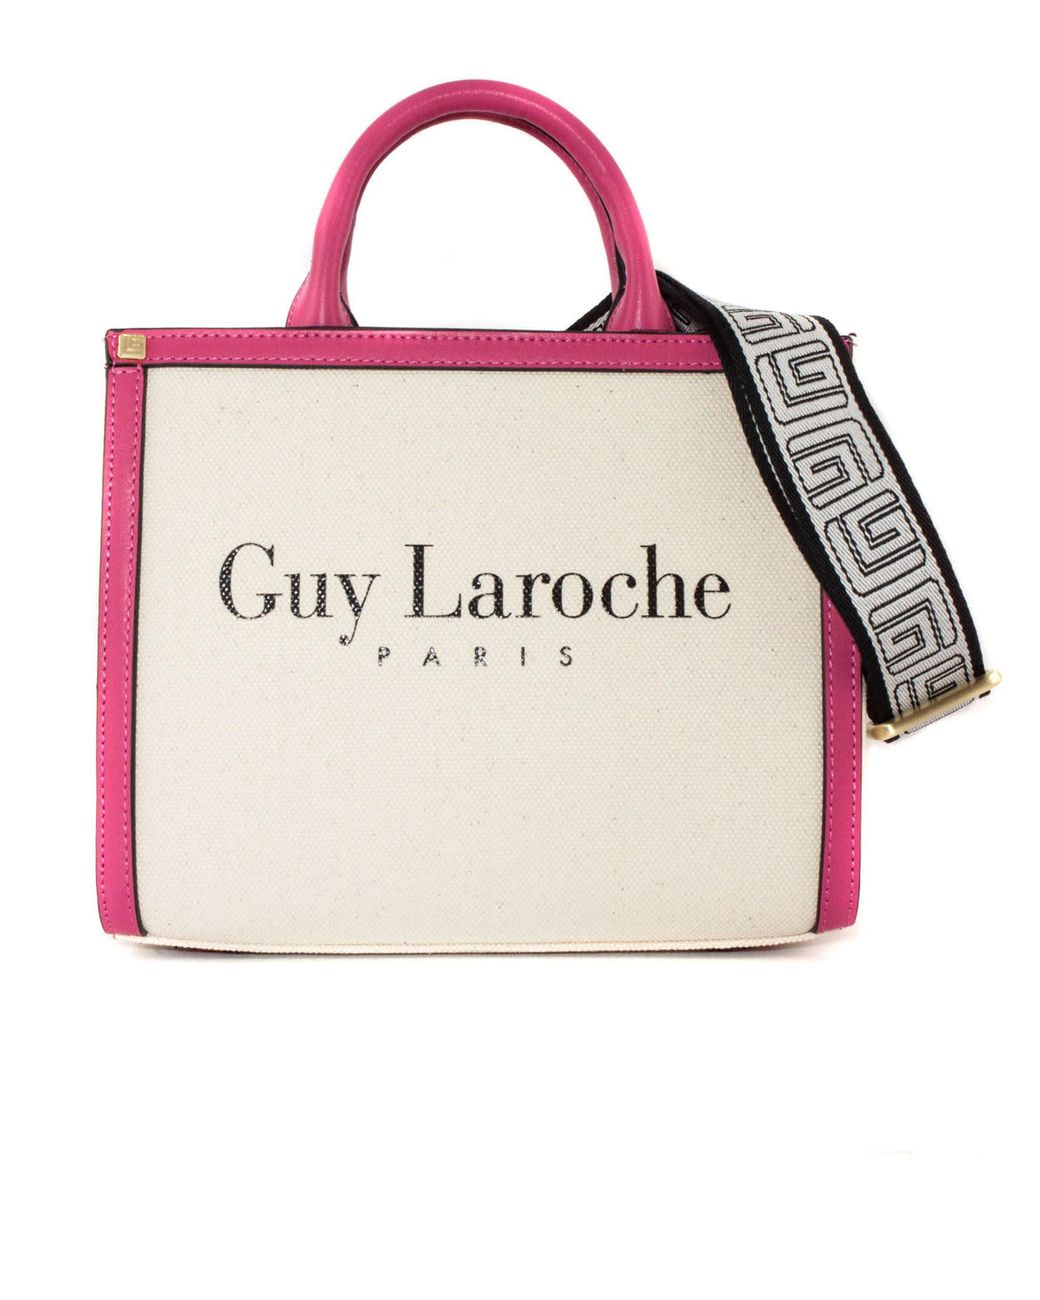 guy laroche vintage bag